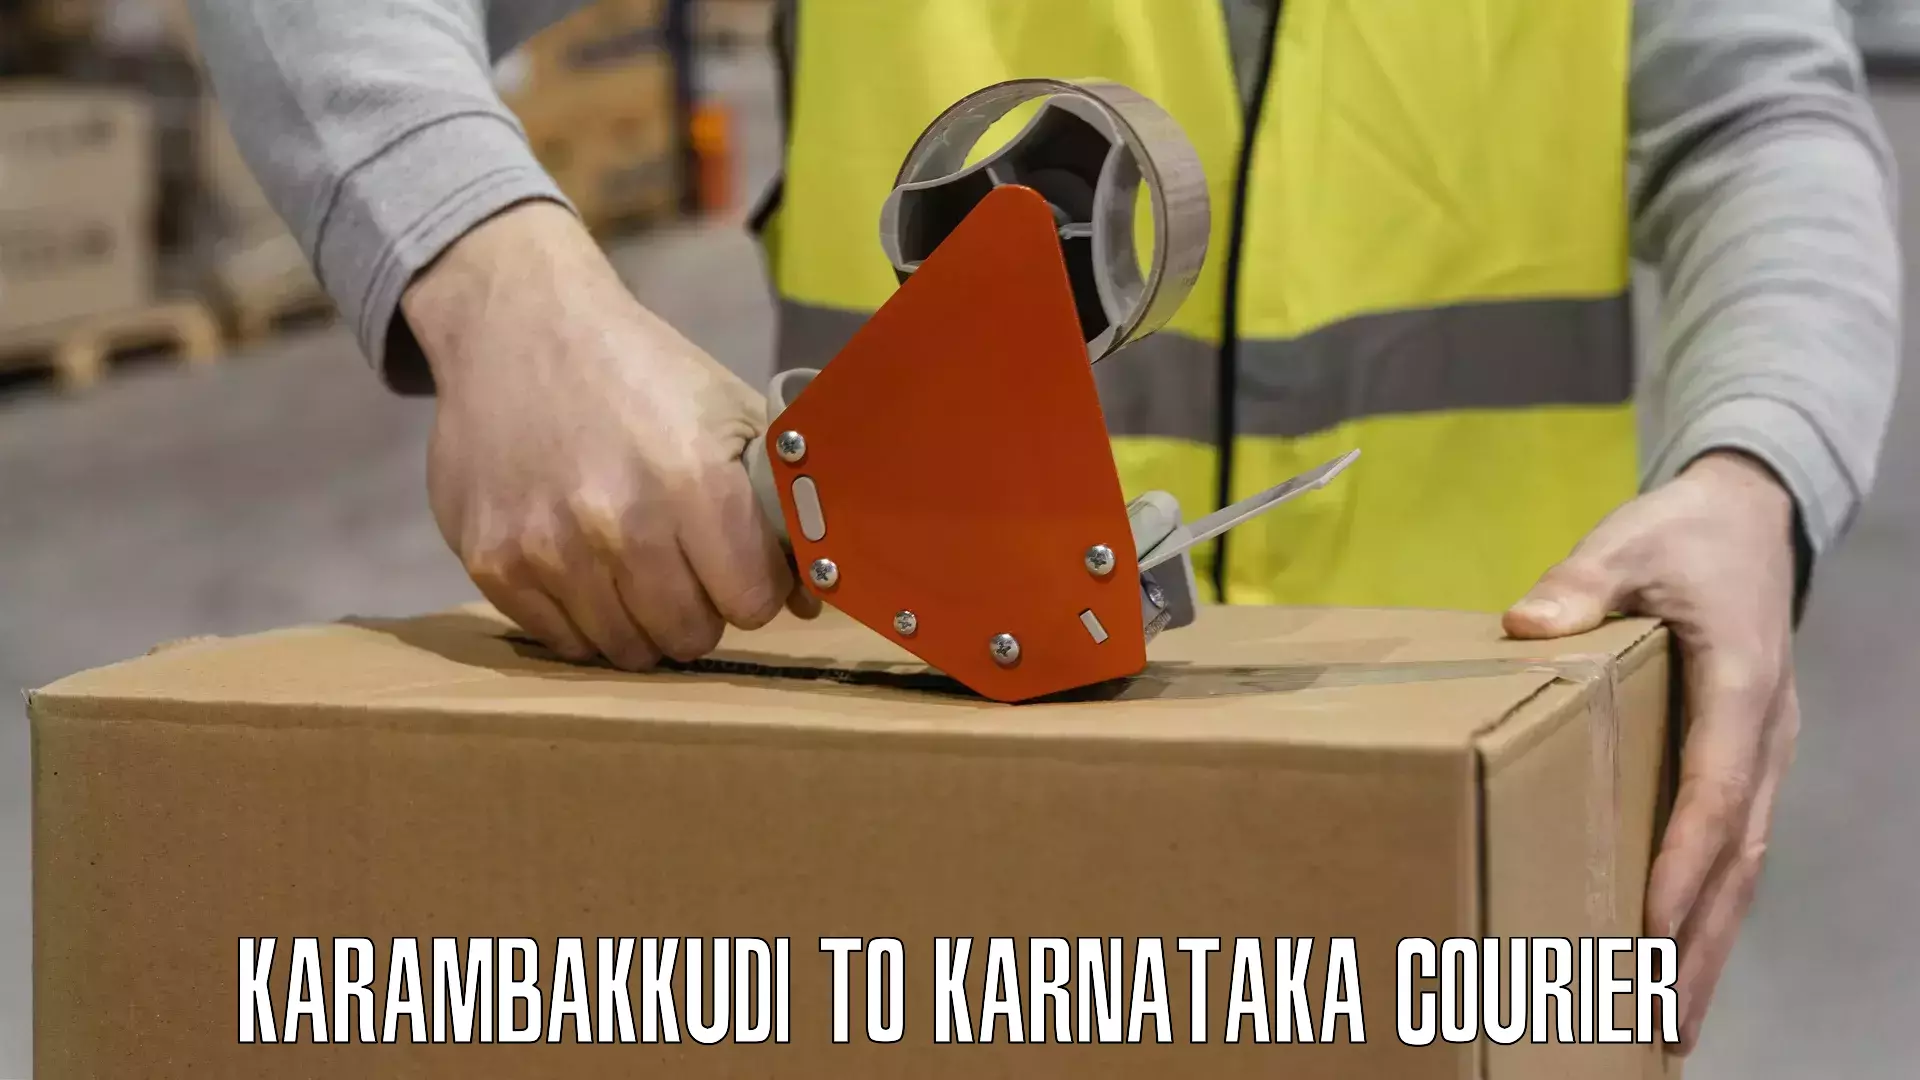 Innovative shipping solutions Karambakkudi to Alnavar